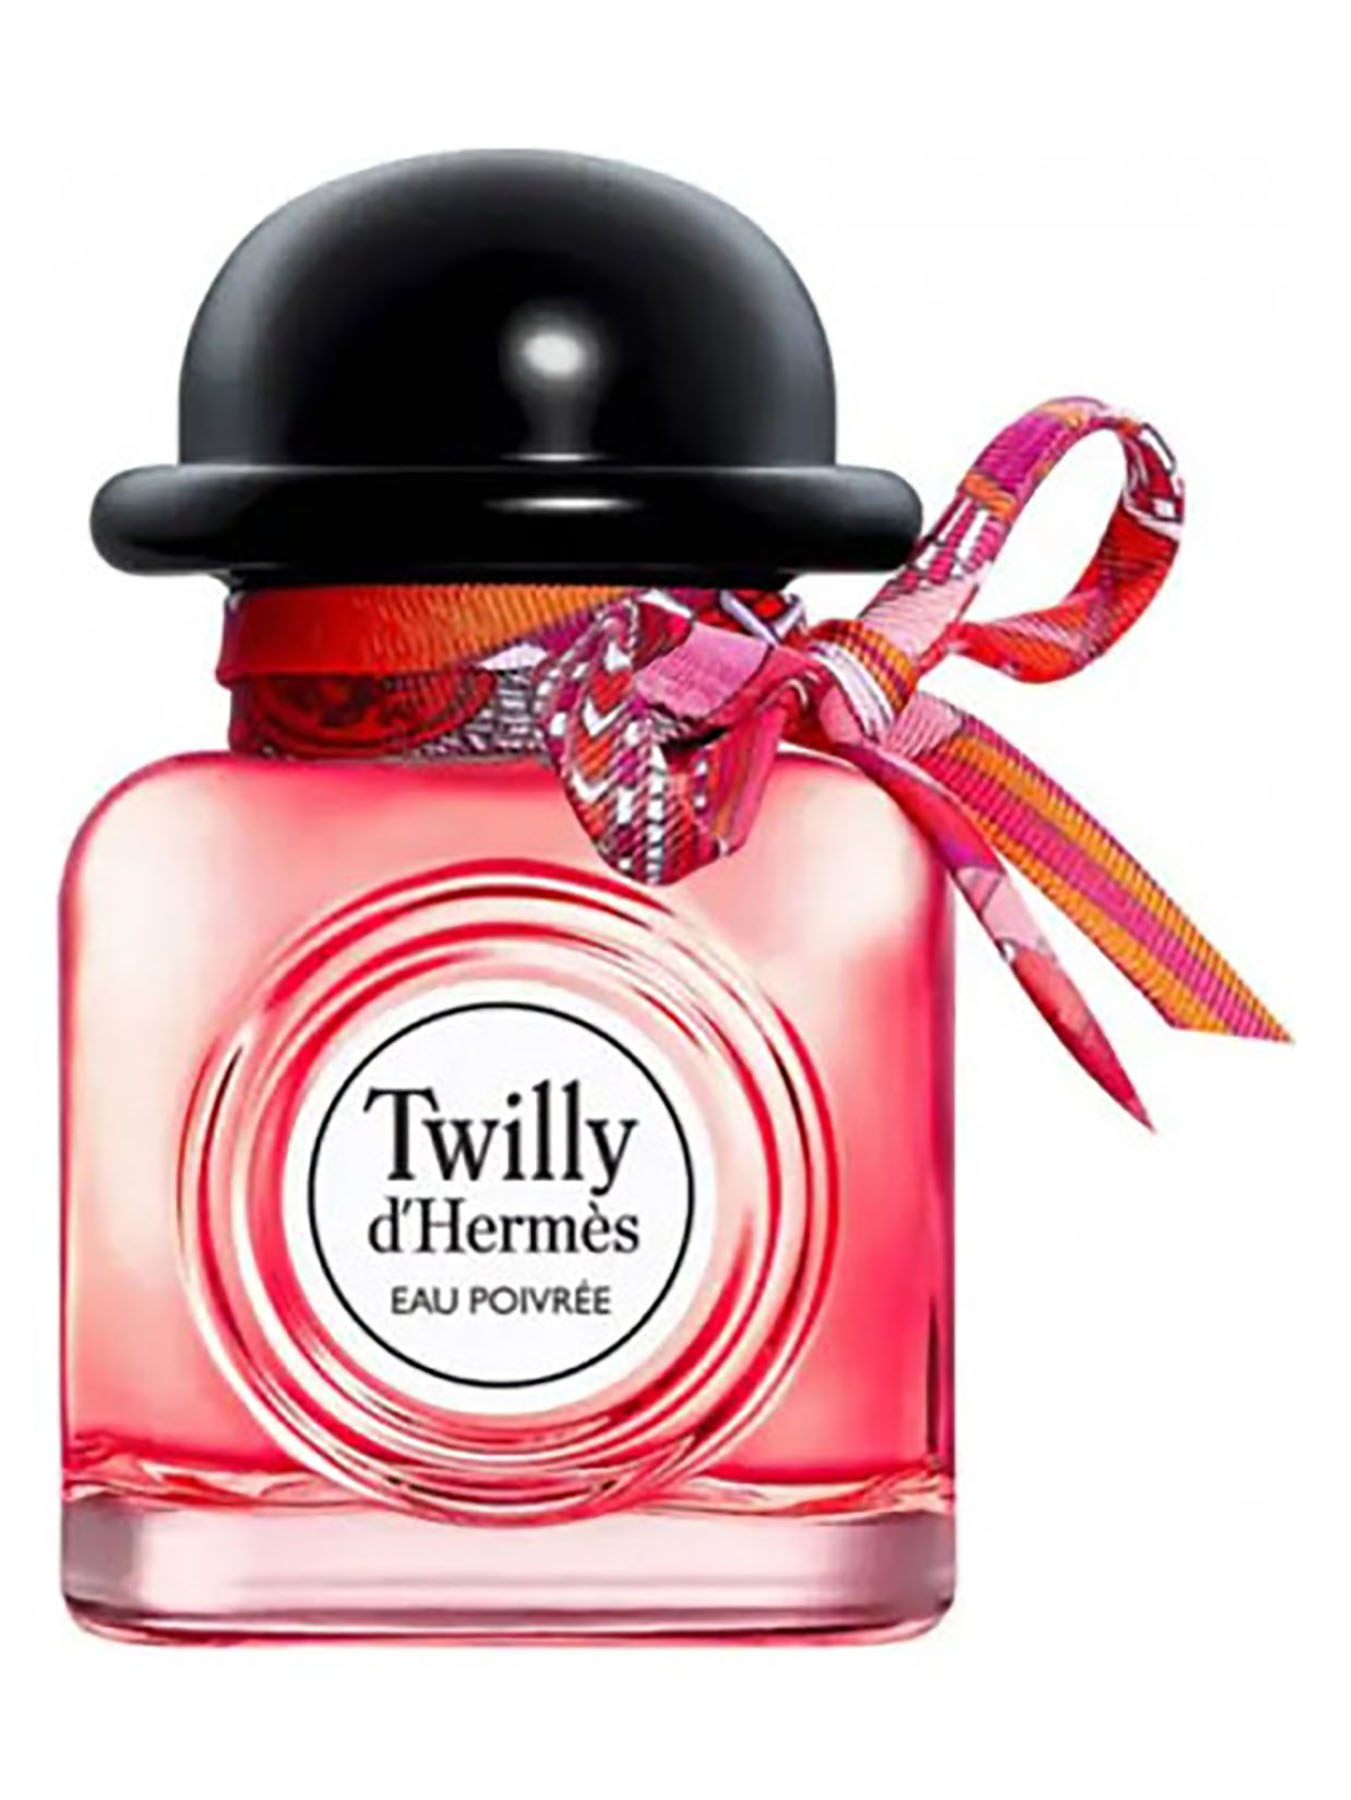 Hermès Twilly d'Hermes Eau Poivree Eau de parfum